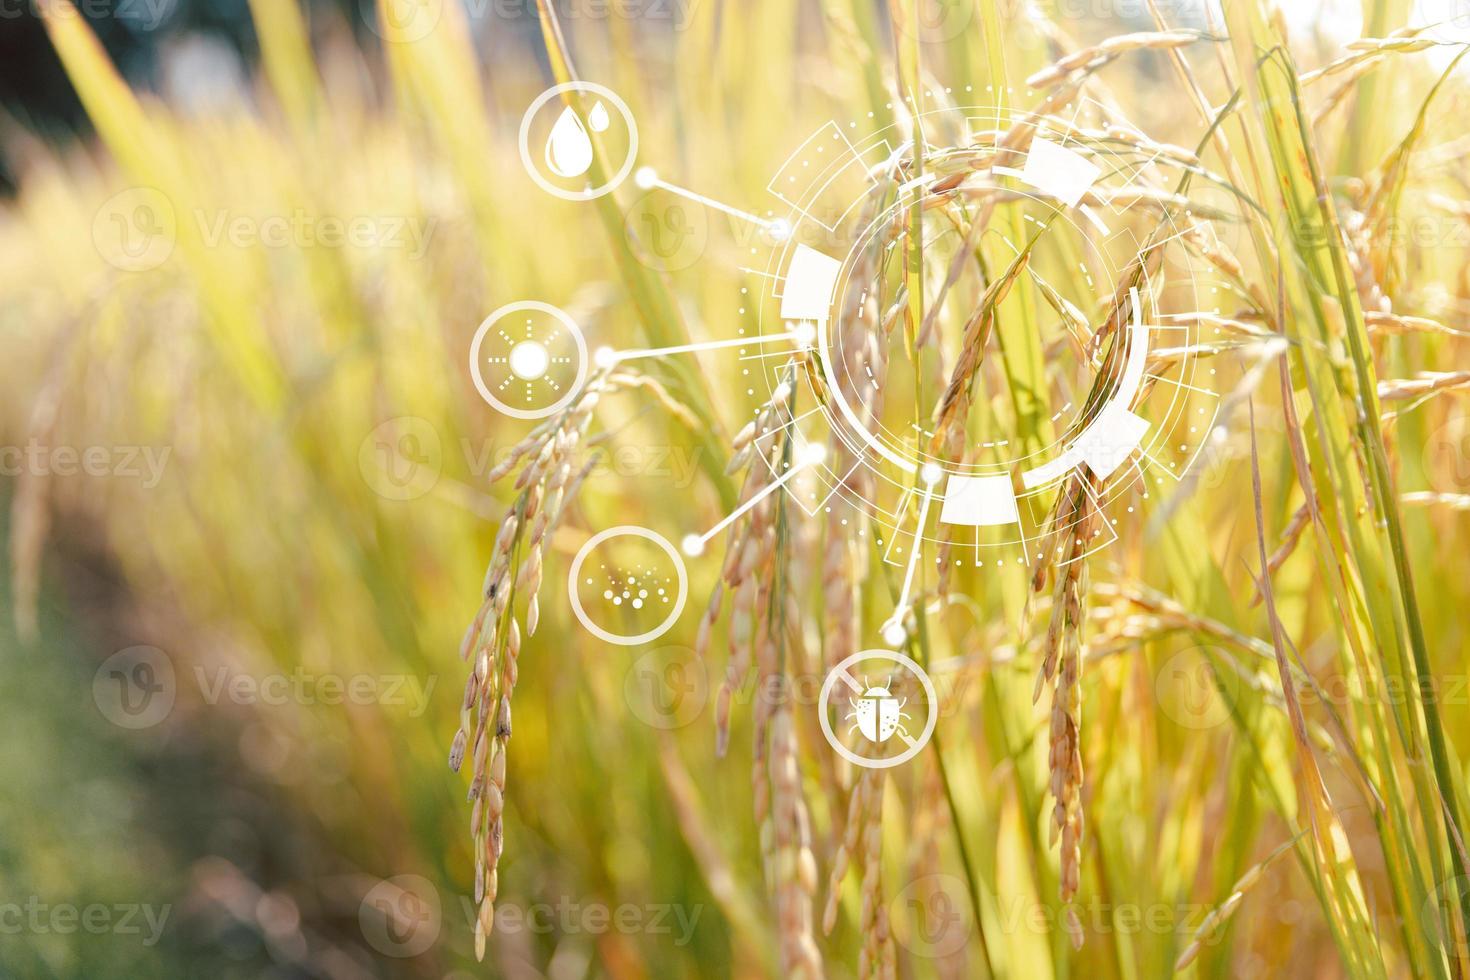 tecnología de innovación para el sistema agrícola inteligente, la gestión agrícola, la tecnología y el concepto de campos de arroz. concepto de negocio agrícola moderno de agricultura inteligente. foto